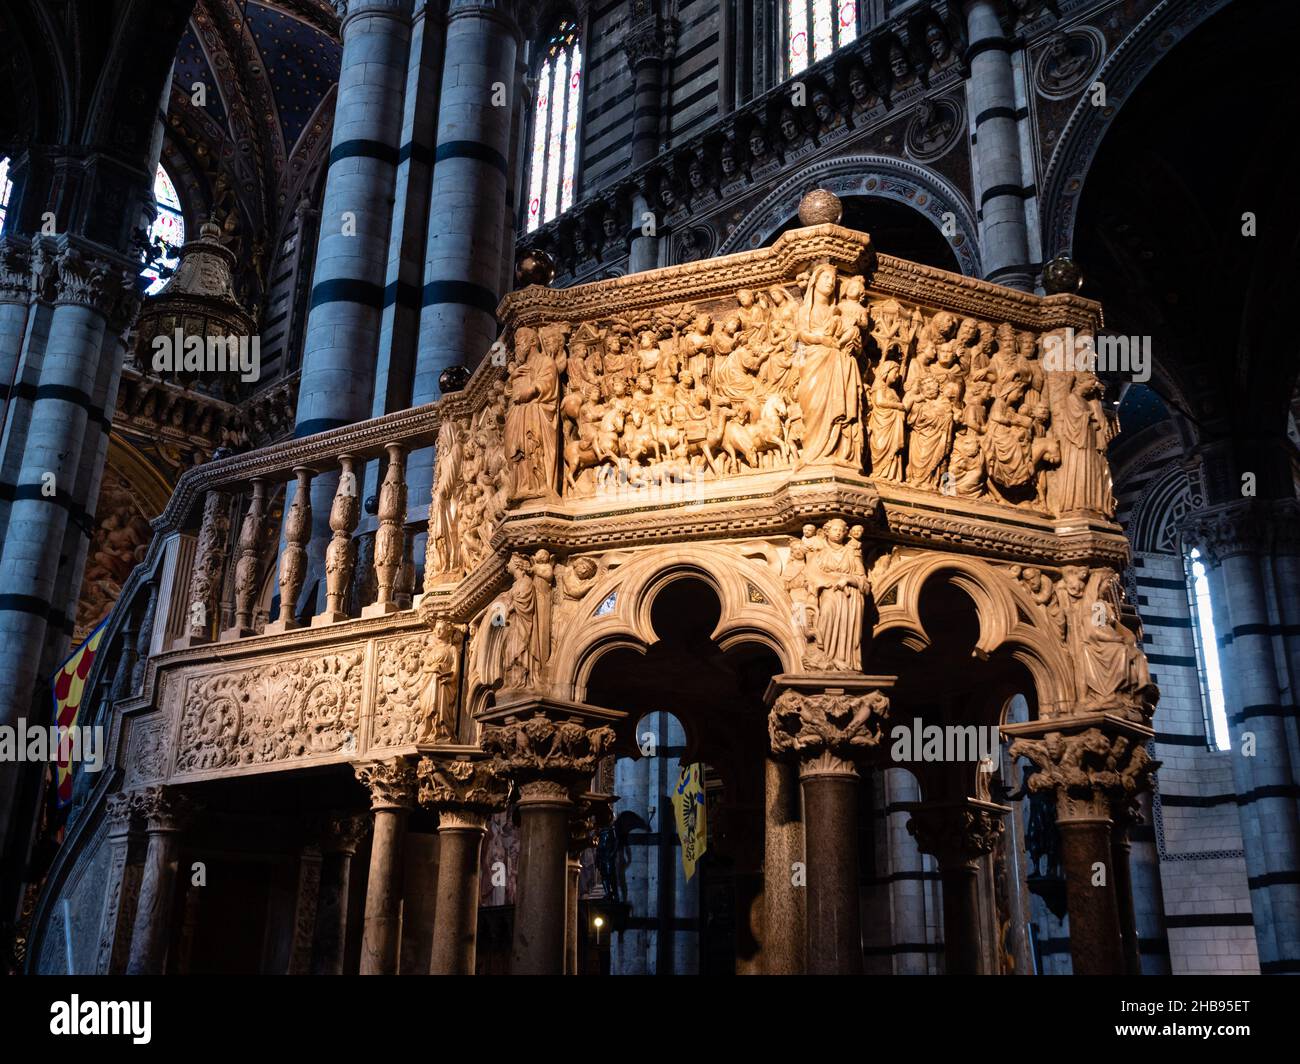 Siena, Italia - Agosto 15 2021: Púlpito en la Catedral de Siena hecho de mármol Carrara en estilo gótico por Nicola Pisano Foto de stock